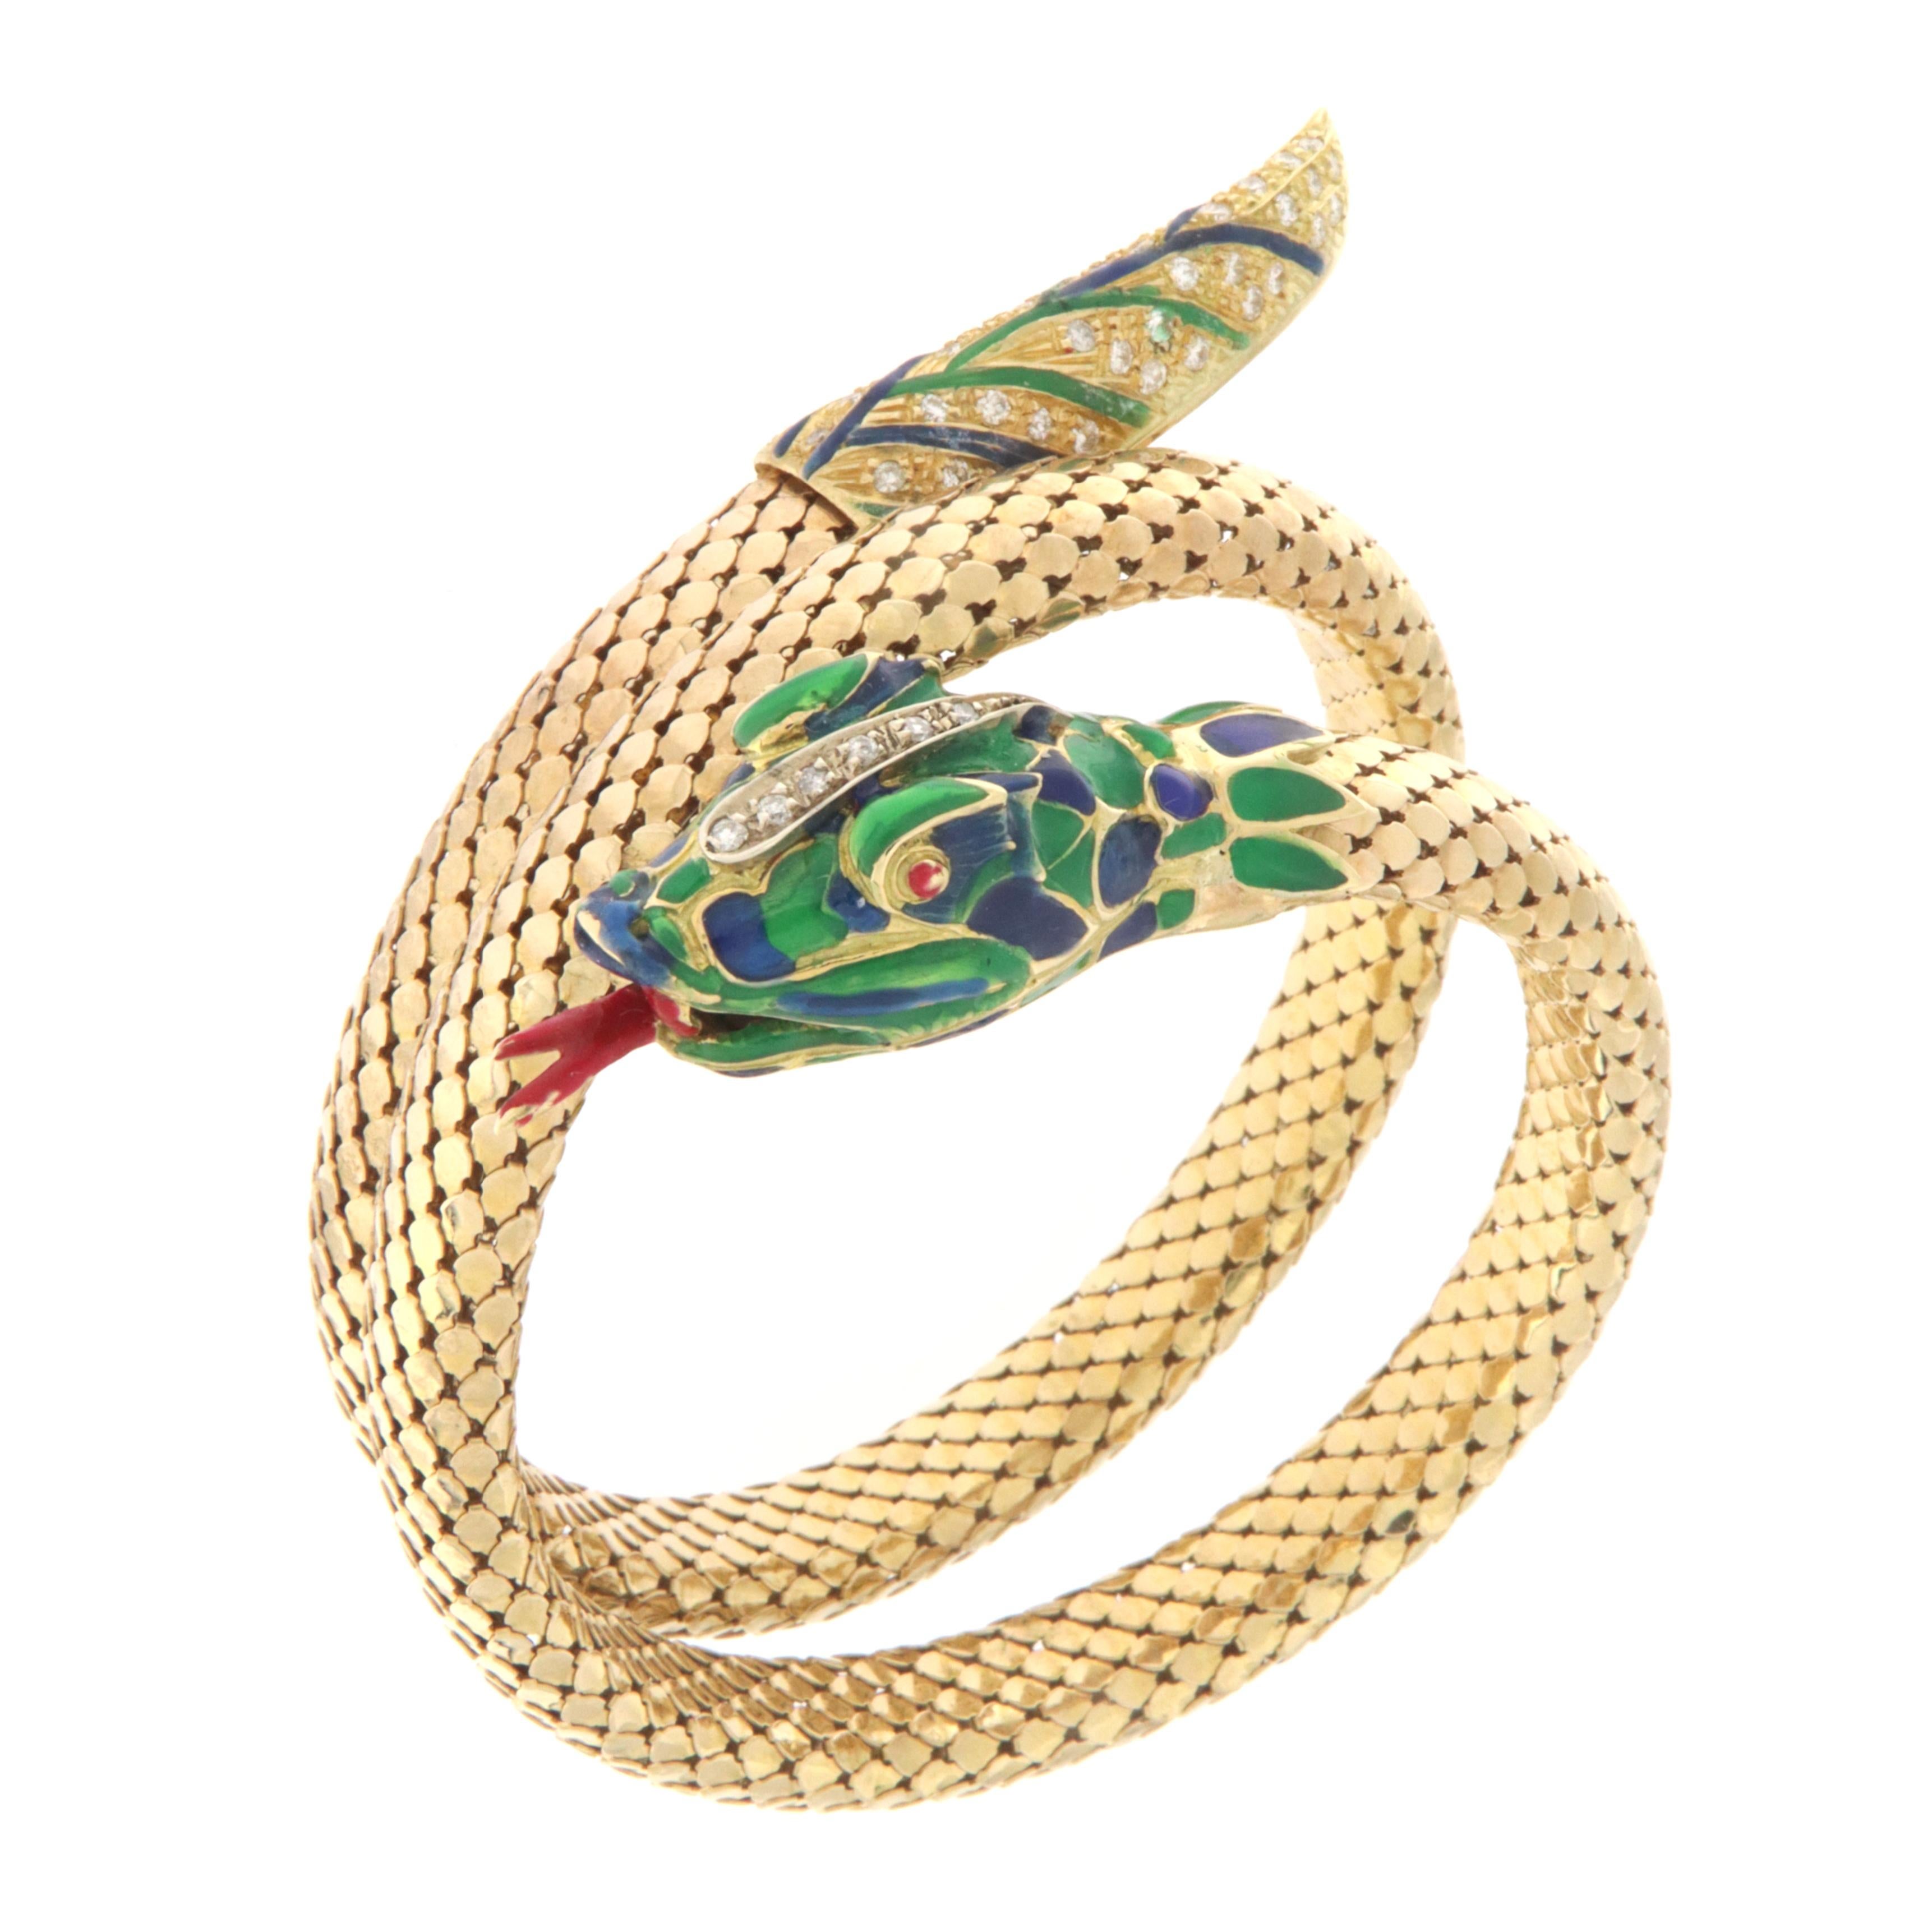 Magnifique bracelet serpent en or jaune 18 carats monté avec des diamants naturels et des émaux verts,bleus et rouges, le bracelet peut s'adapter à toutes les tailles de poignet comme le montre la vidéo.
Les bijoux en forme de serpent ont toujours